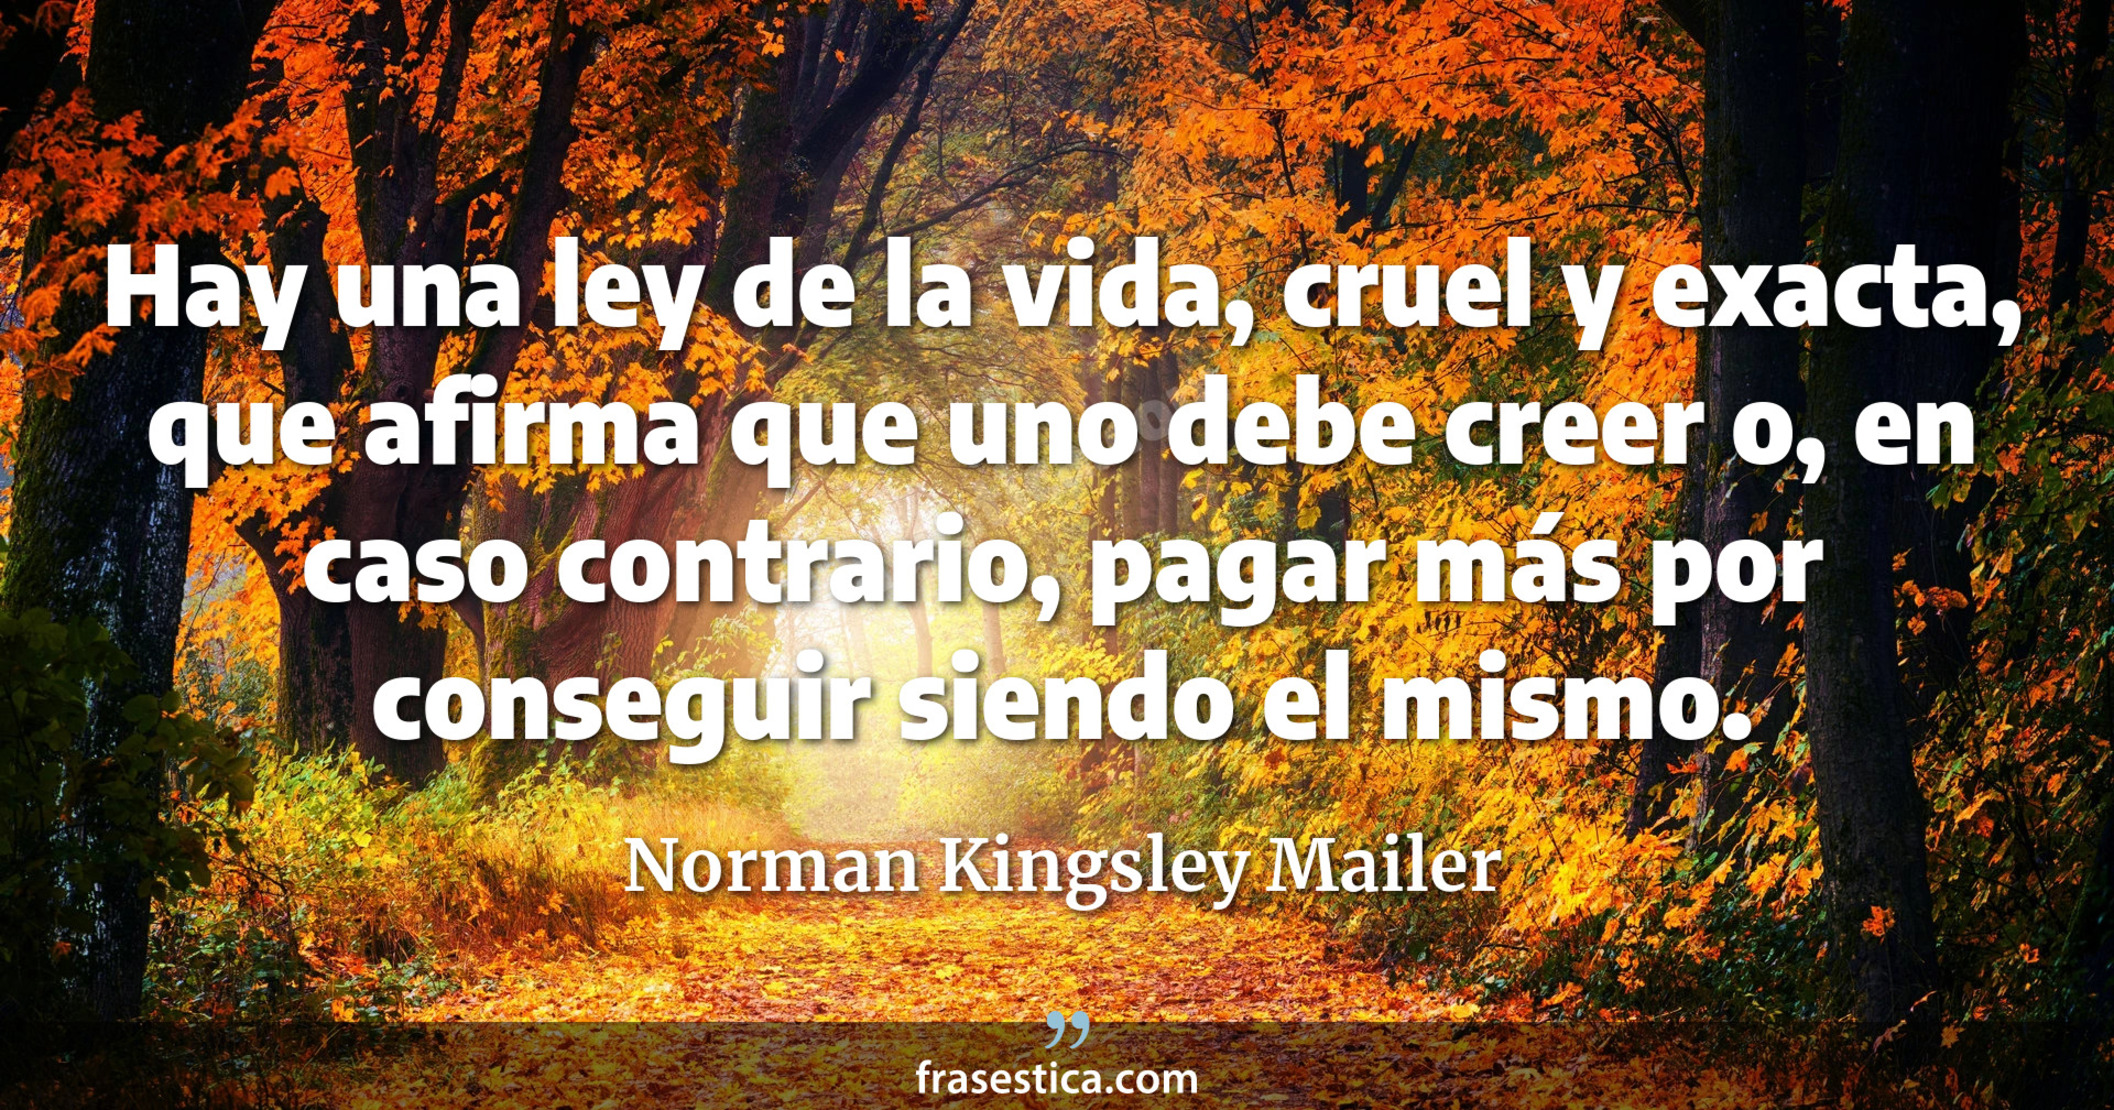 Hay una ley de la vida, cruel y exacta, que afirma que uno debe creer o, en caso contrario, pagar más por conseguir siendo el mismo. - Norman Kingsley Mailer